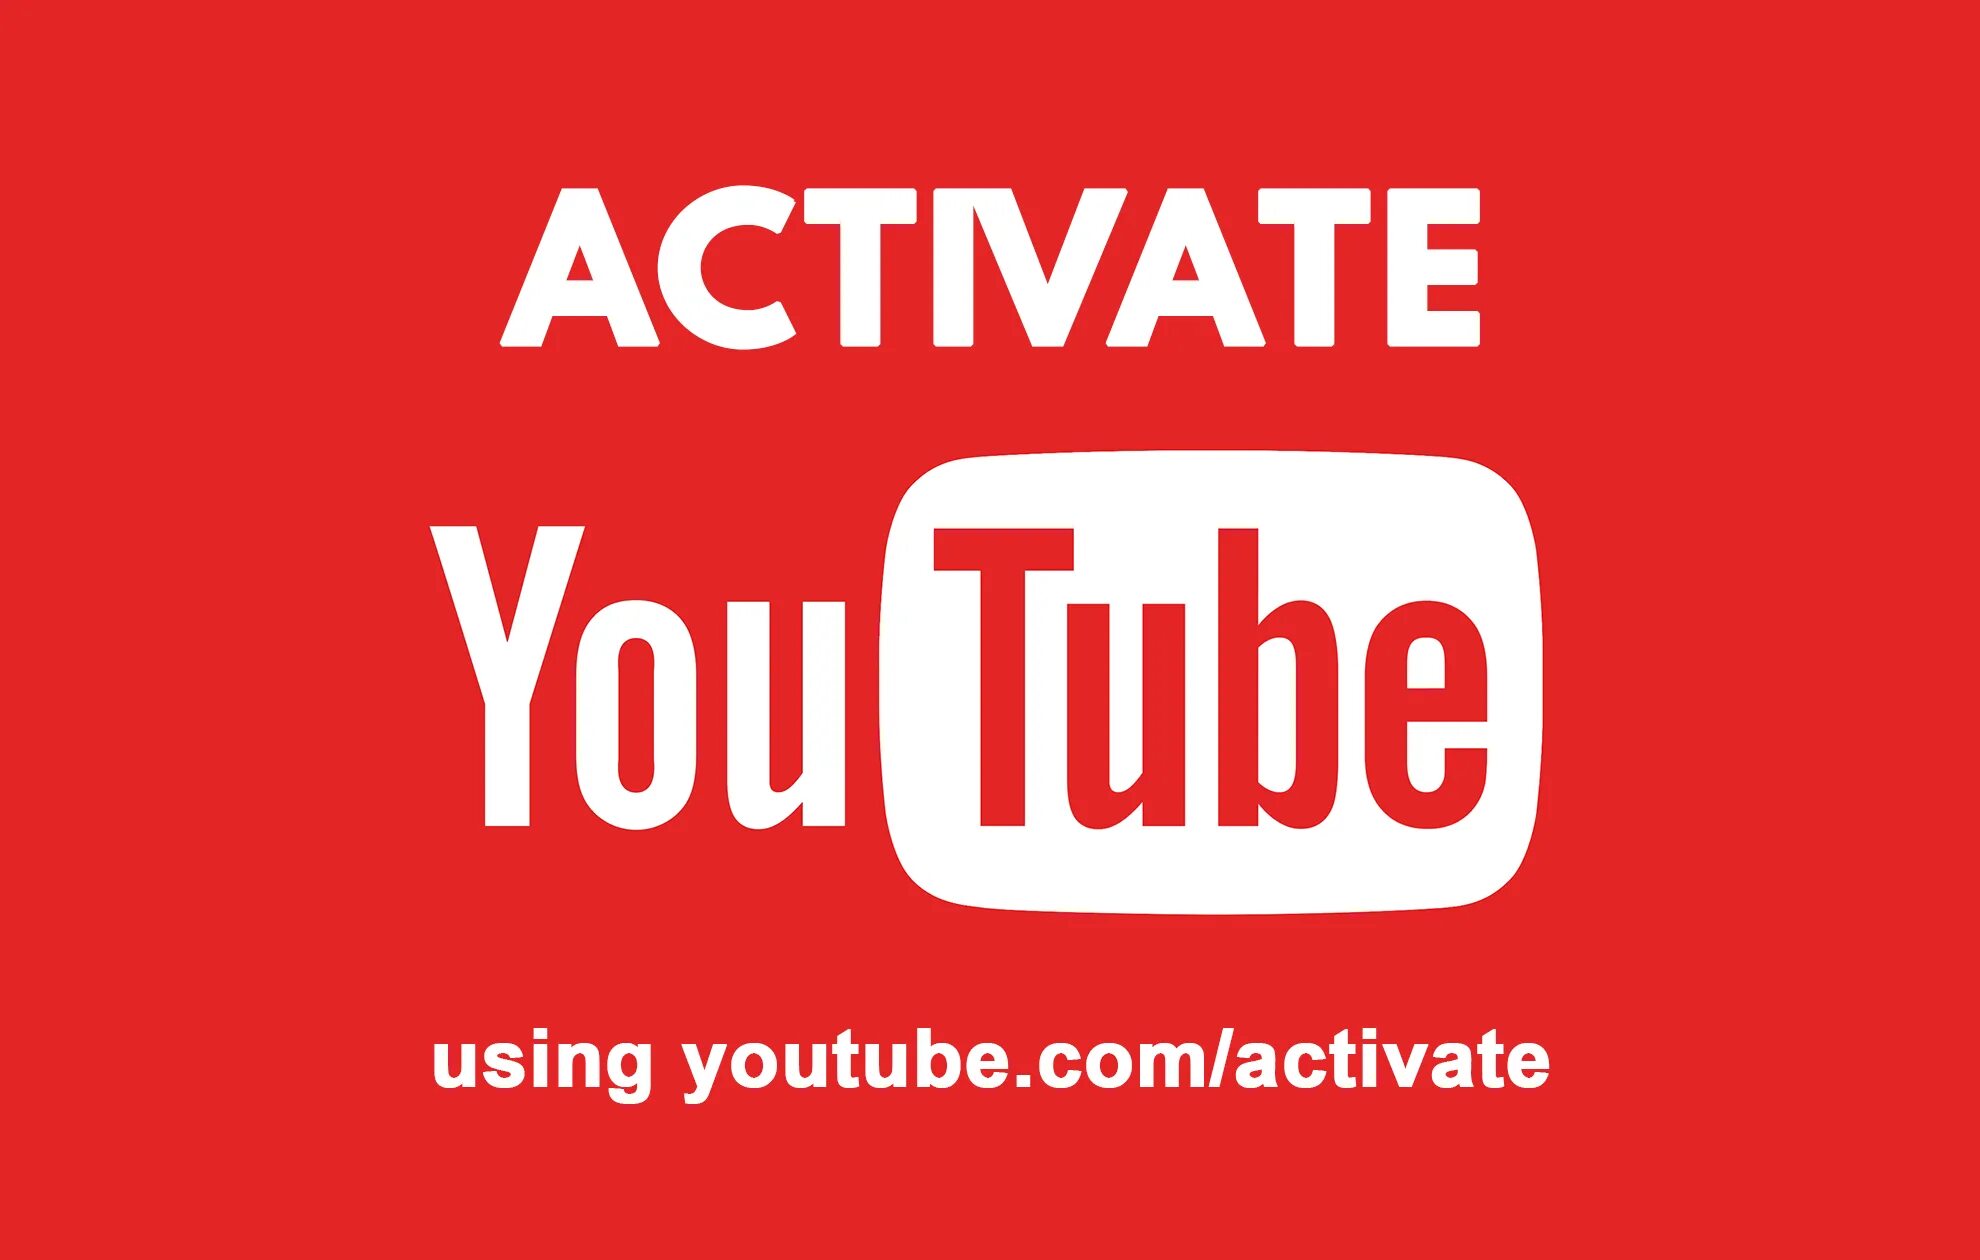 Youtube.com/activate. Ютуб.com activate. Ютуб активейт. Youtube активация. Туб активейт